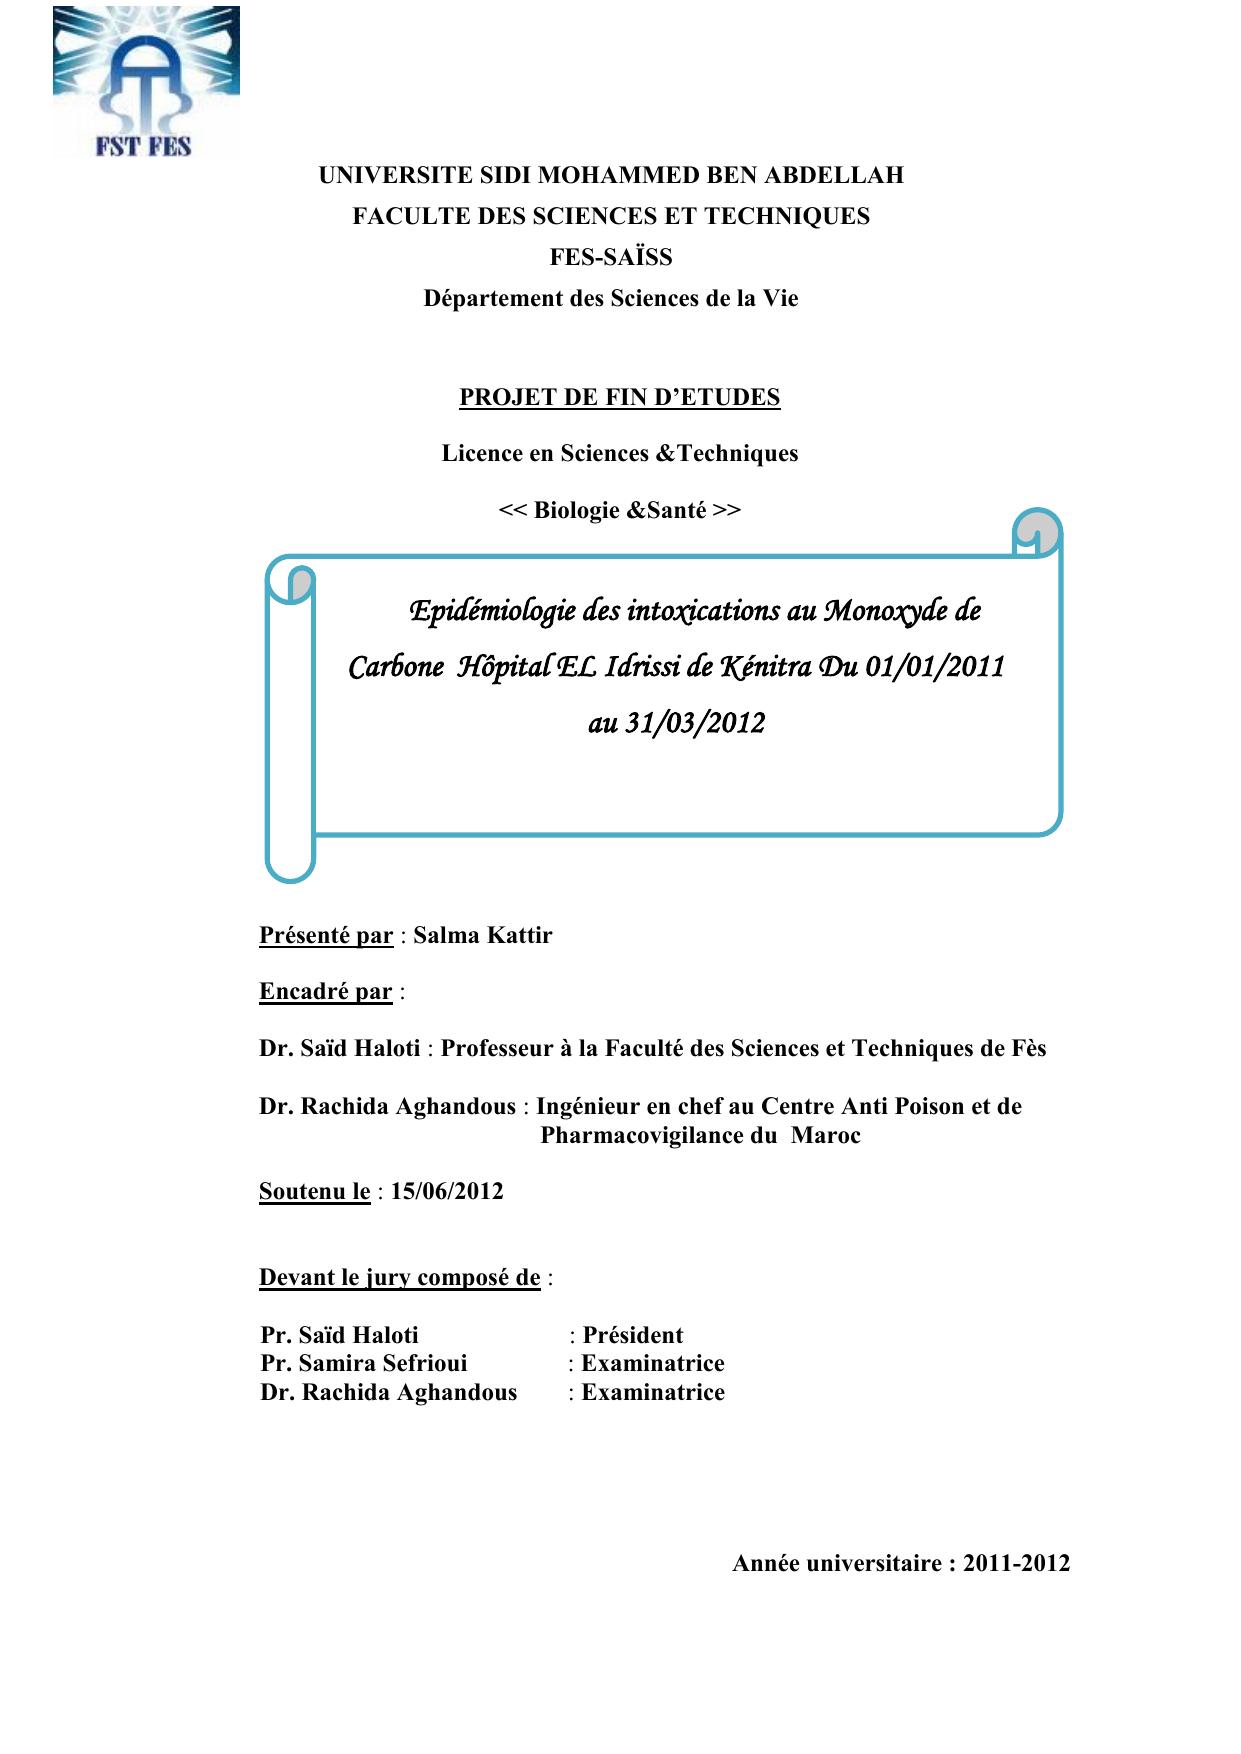 Epidémiologie des intoxications au Monoxyde de Carbone Hôpital EL Idrissi de Kénitra Du 01/01/2011 au 31/03/2012